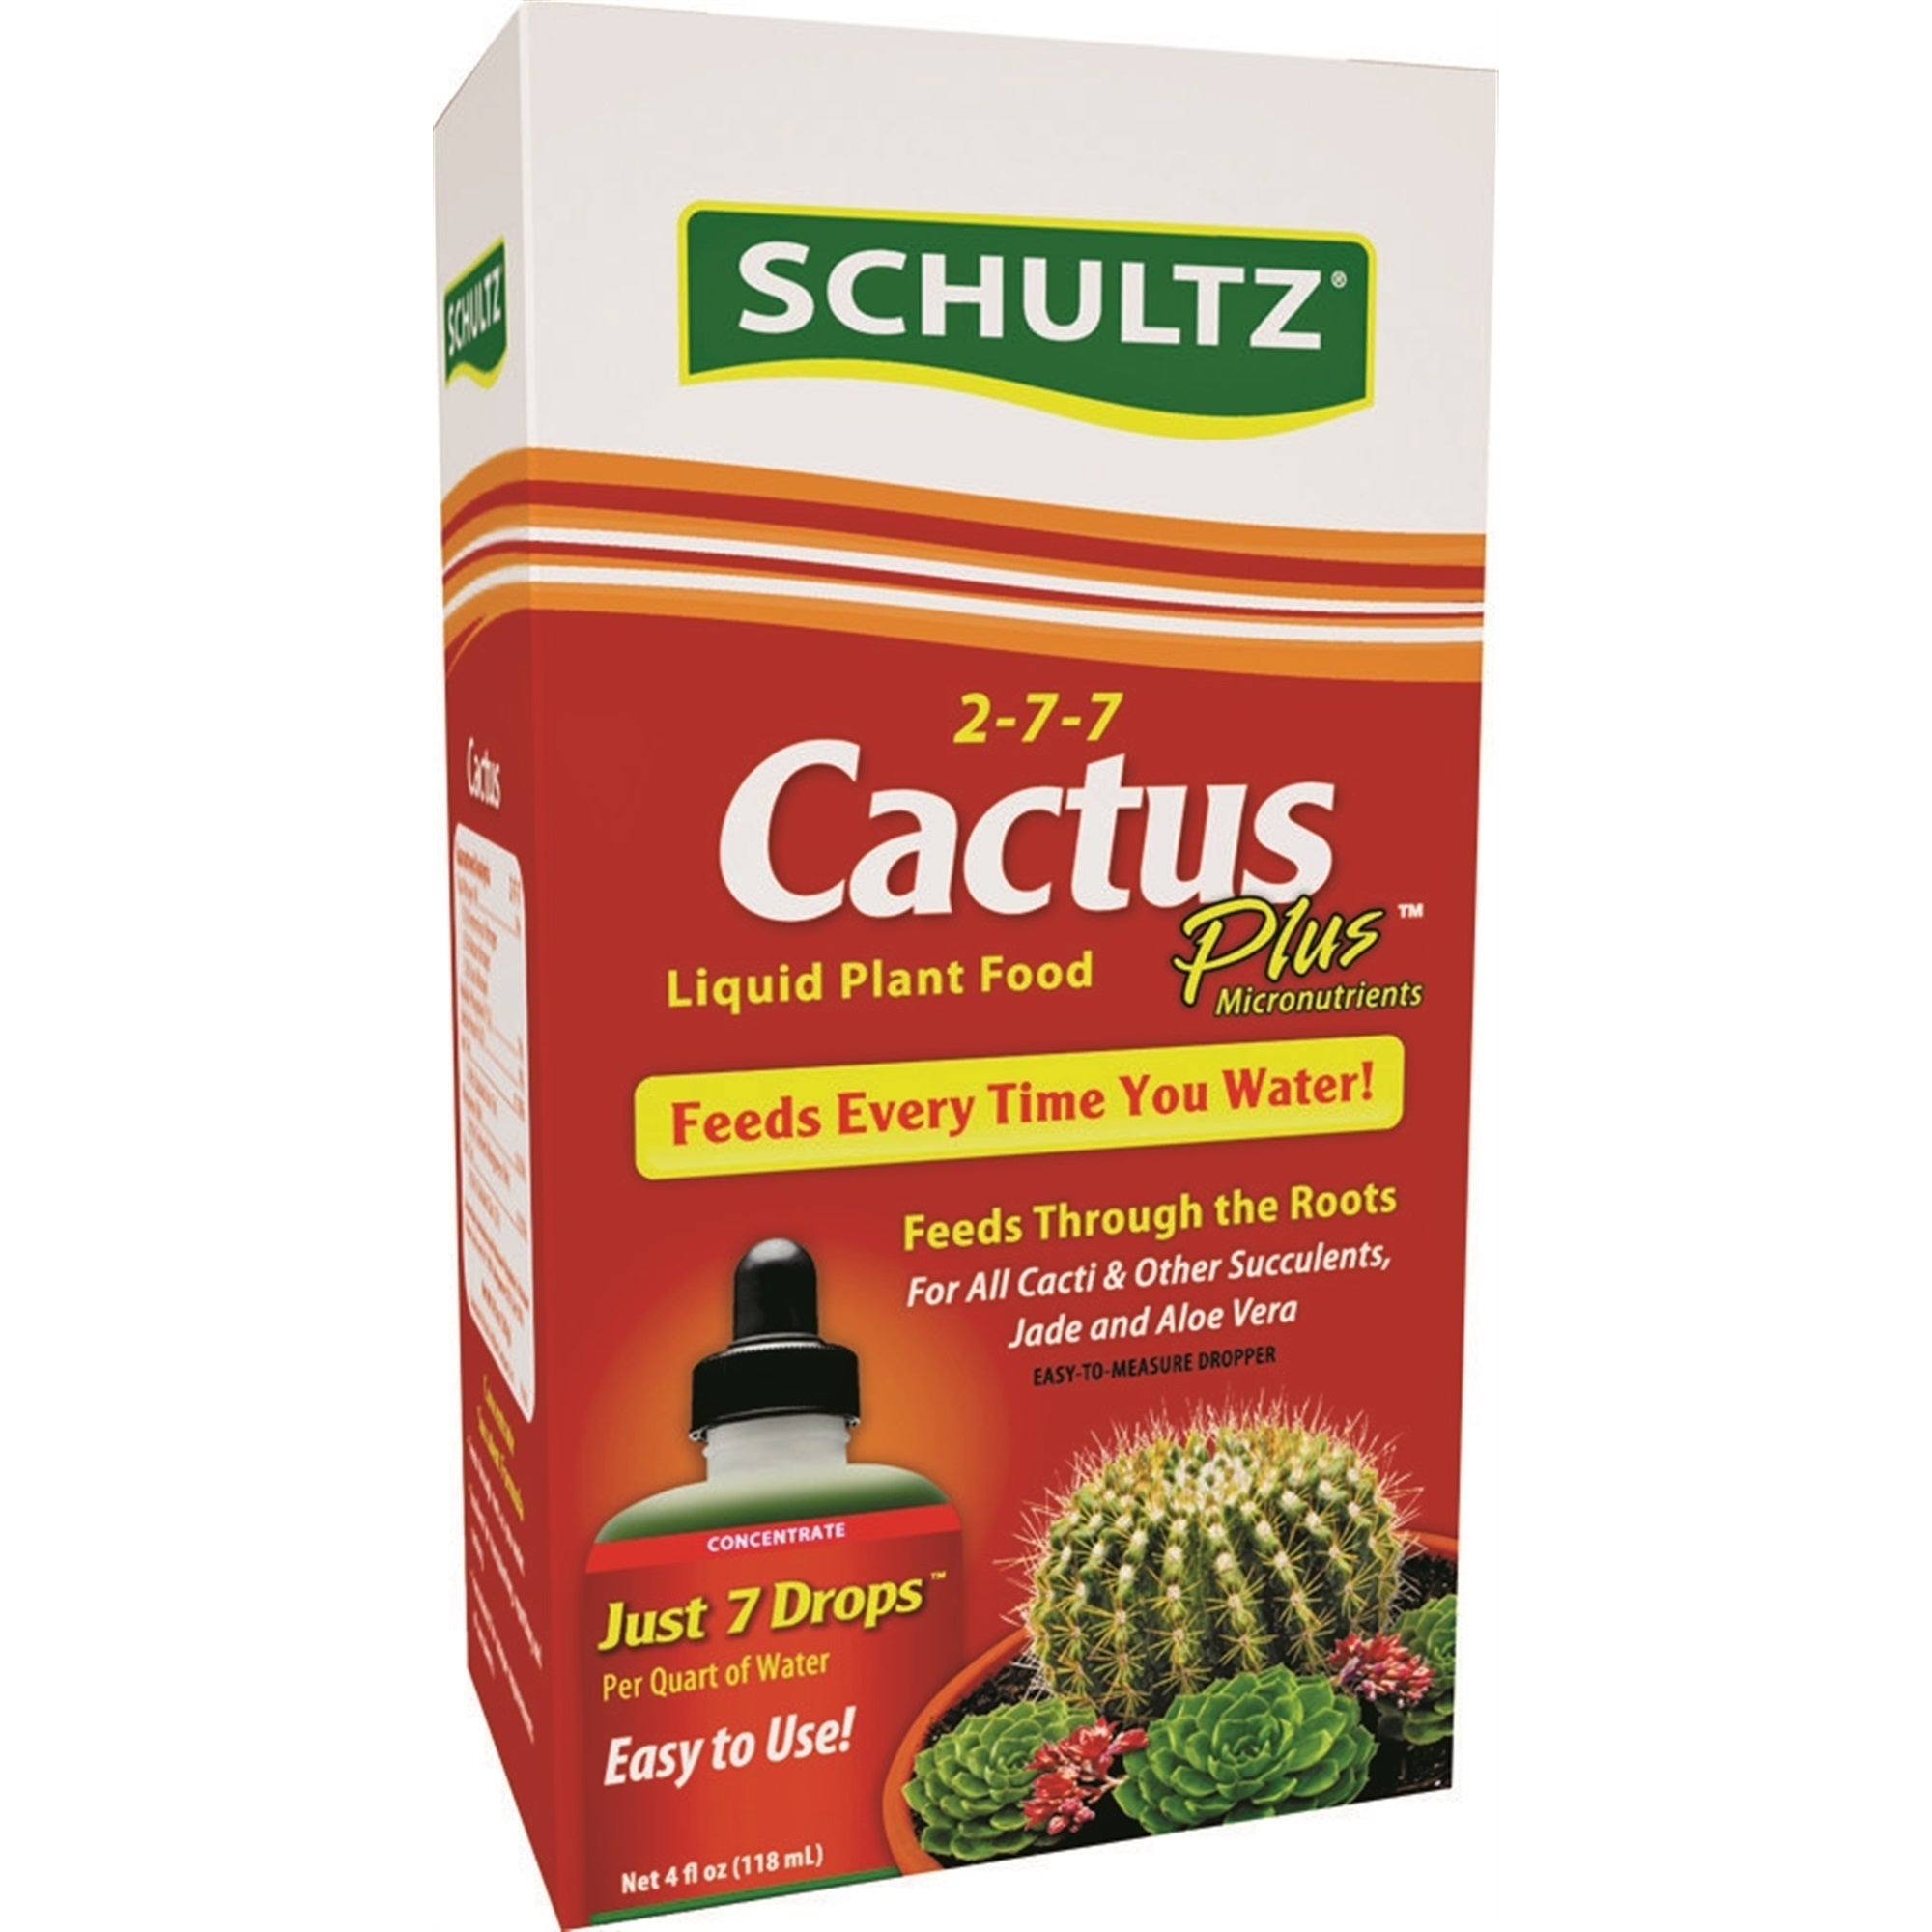 Schultz Cactus Plus Liquid Plant Food 2-7-7, 4 oz